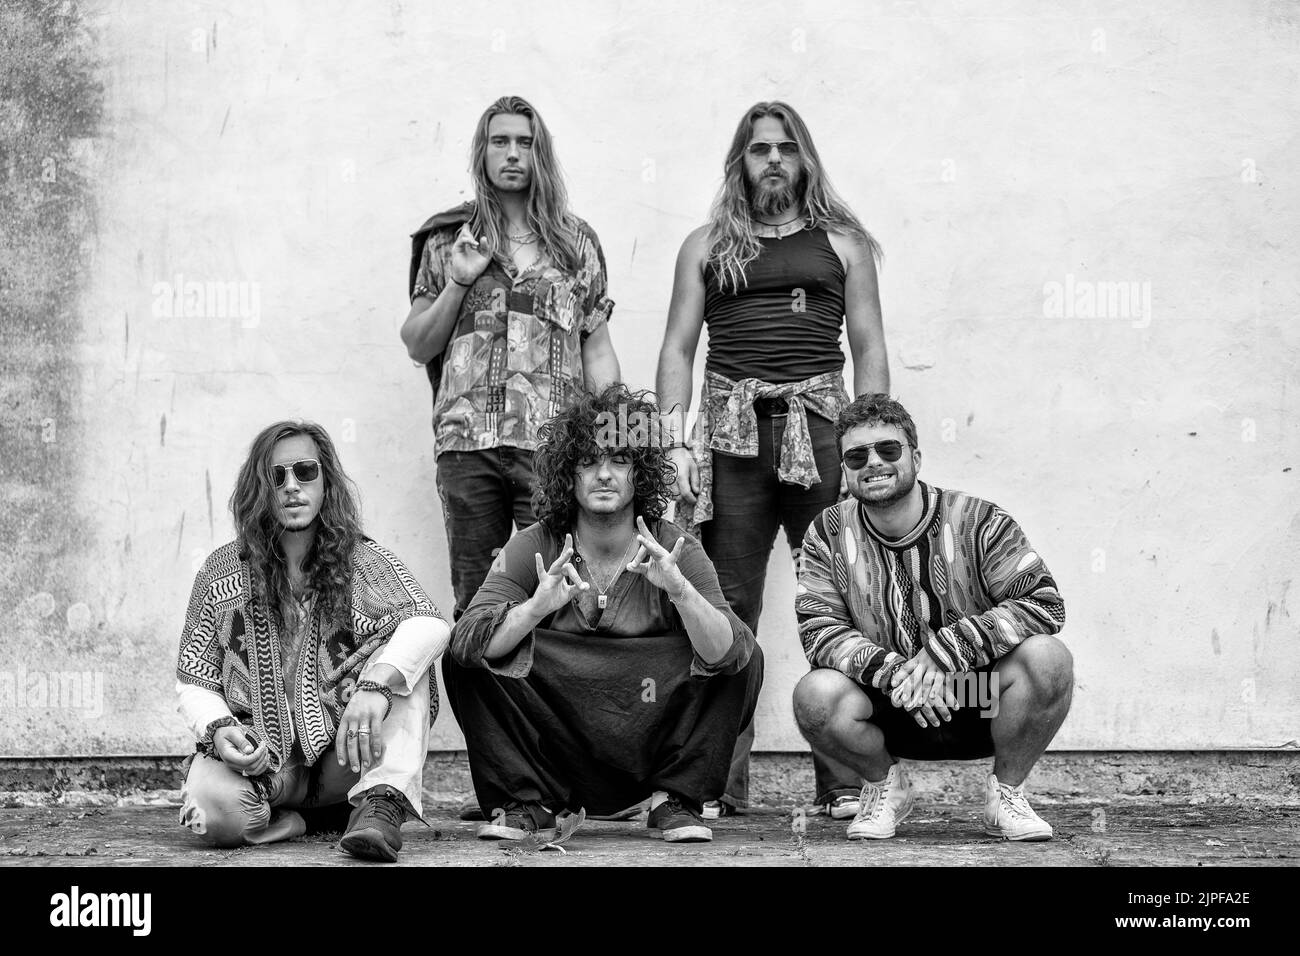 cinq hommes posent sur un fond blanc, trois agenouillement, deux debout, cheveux longs, groupe rock, musiciens Banque D'Images